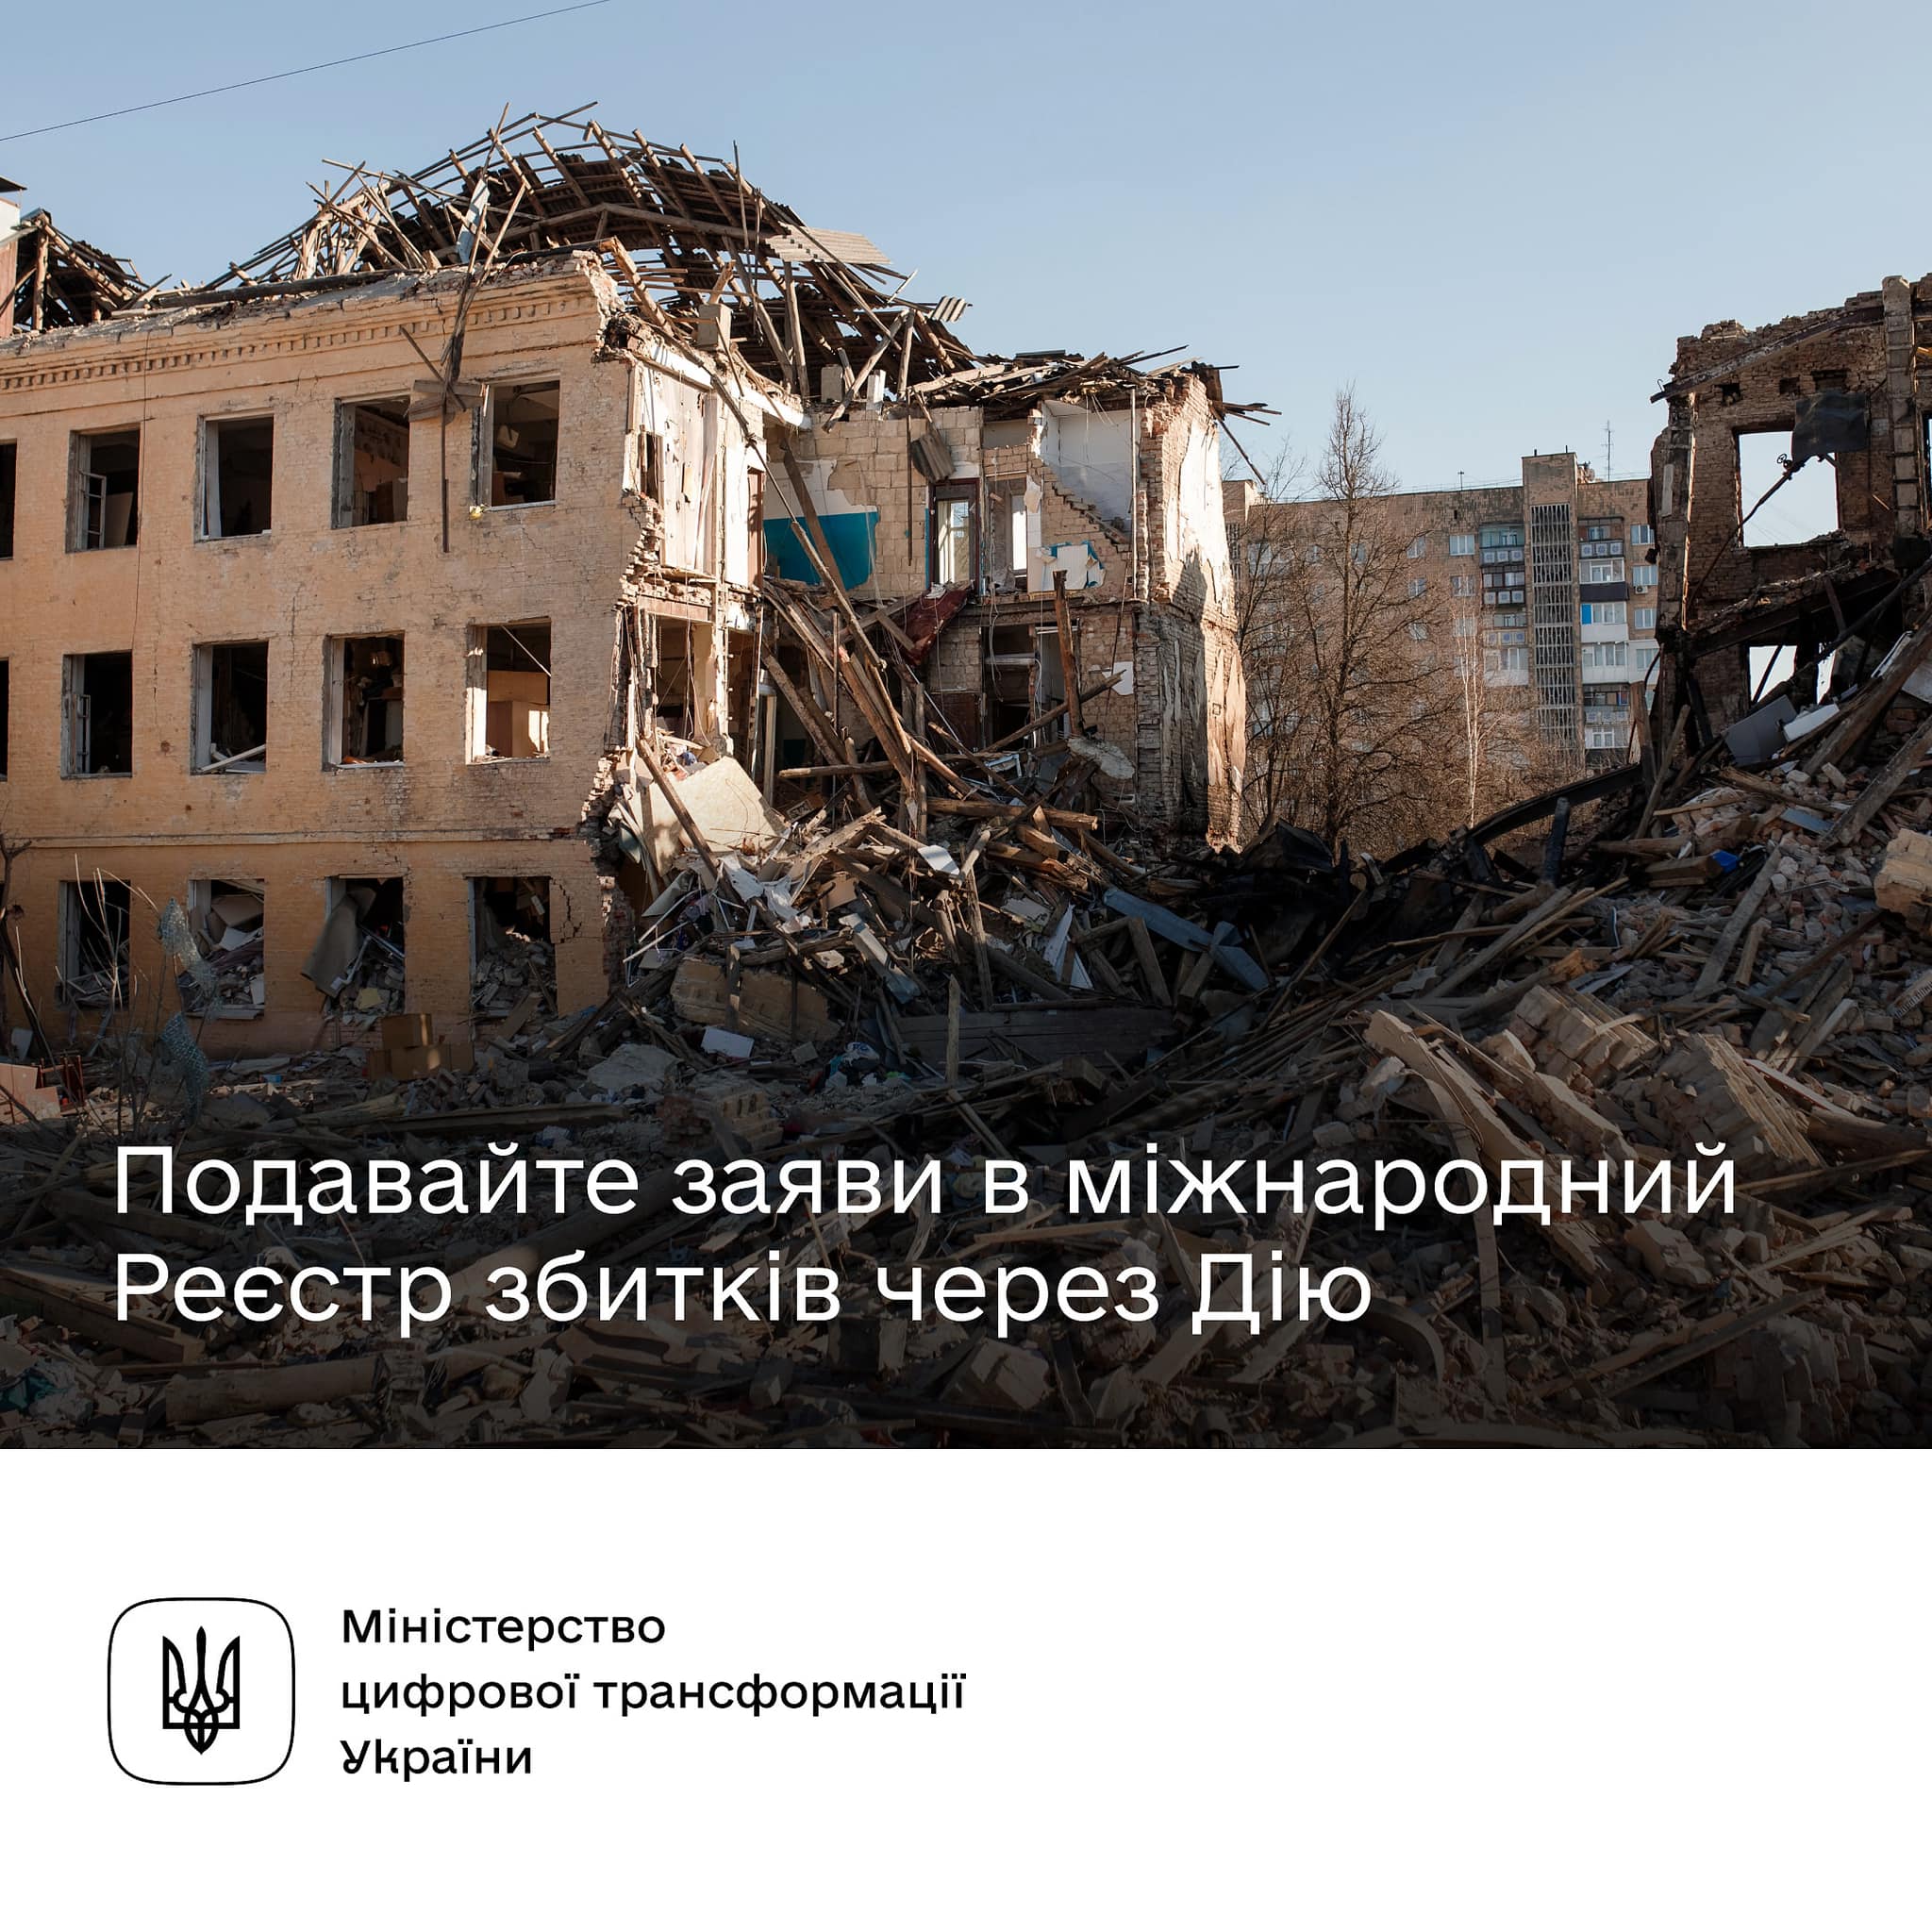 Мінцифри: Всі власники пошкодженого чи зруйнованого житла можуть подати заяву до міжнародного Реєстру збитків - запустили сервіс у Дії